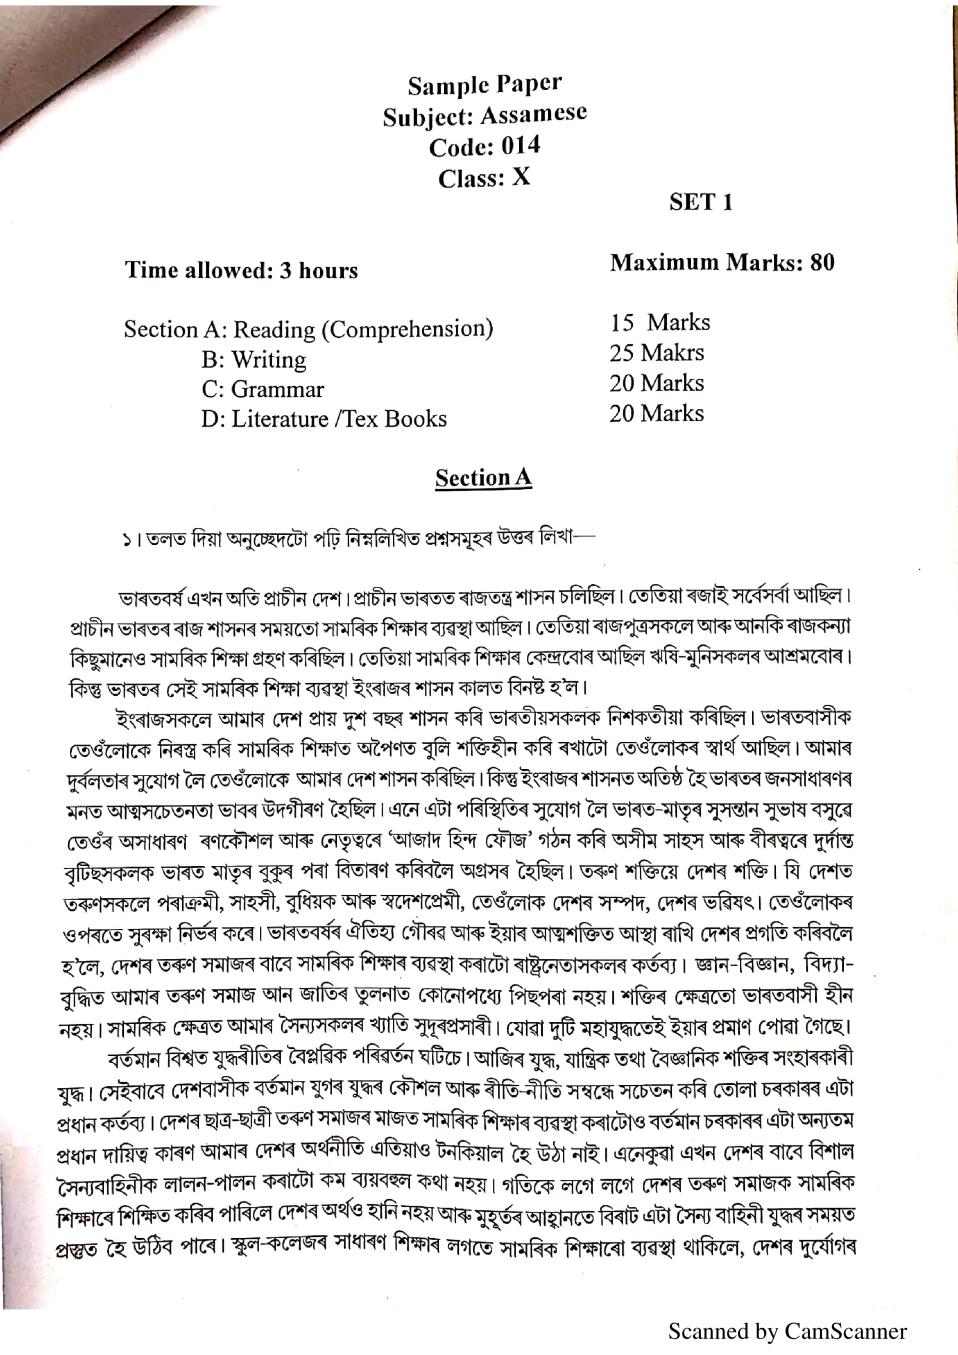 assamese essay for class 10 pdf